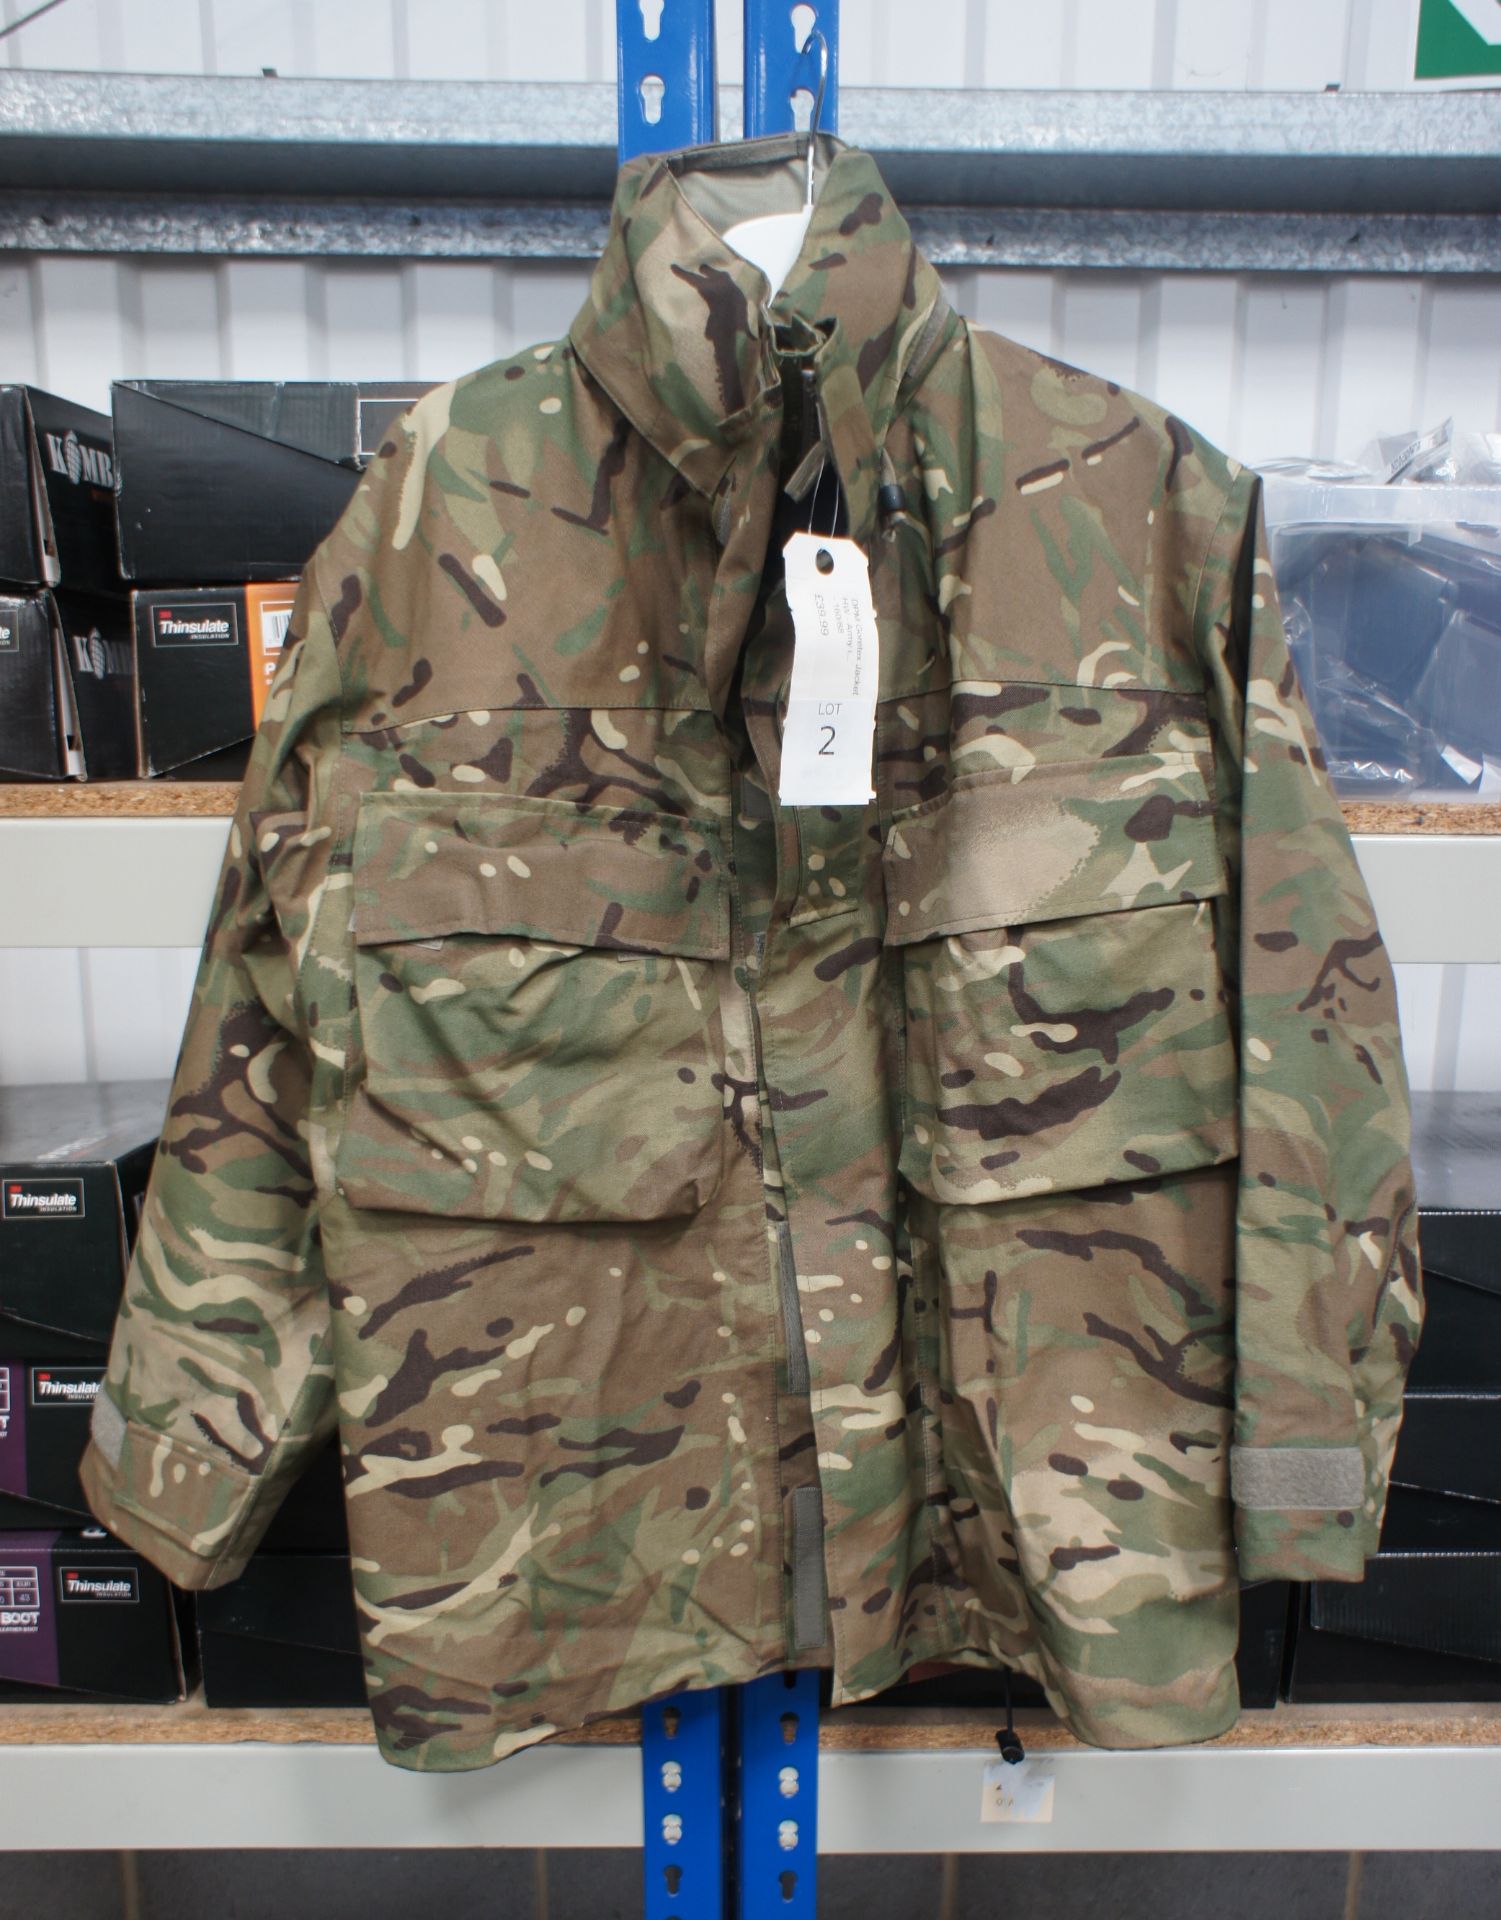 DPM Gortex Jacket 160/88 Rrp. £39.99 - Image 2 of 2